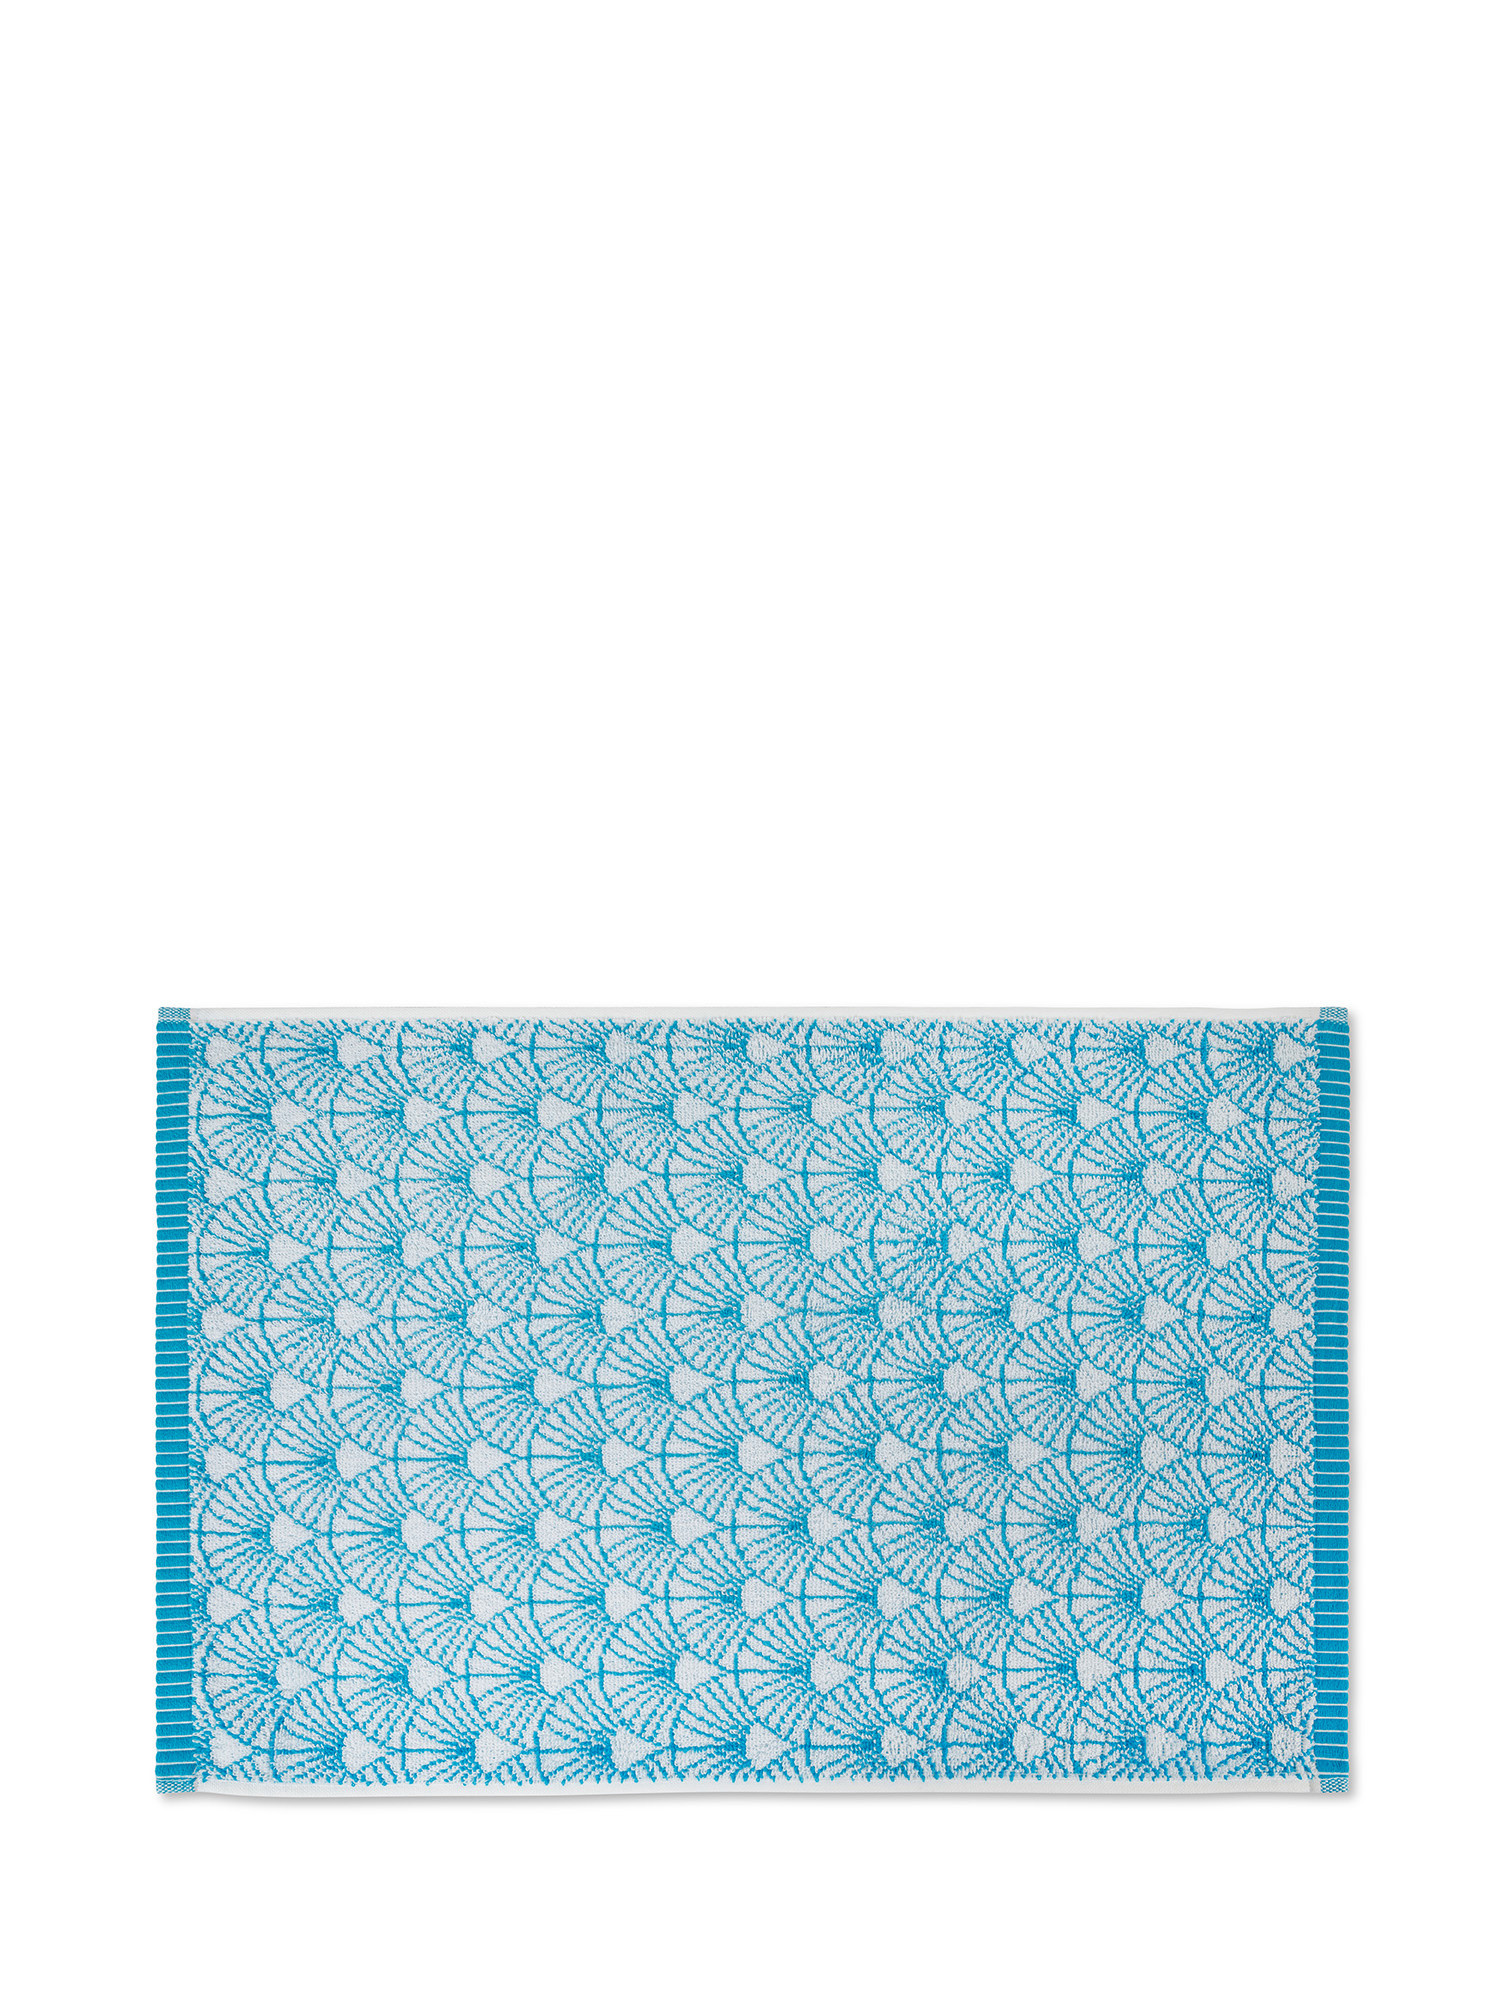 Asciugamano spugna di cotone motivo ventagli, Azzurro, large image number 1